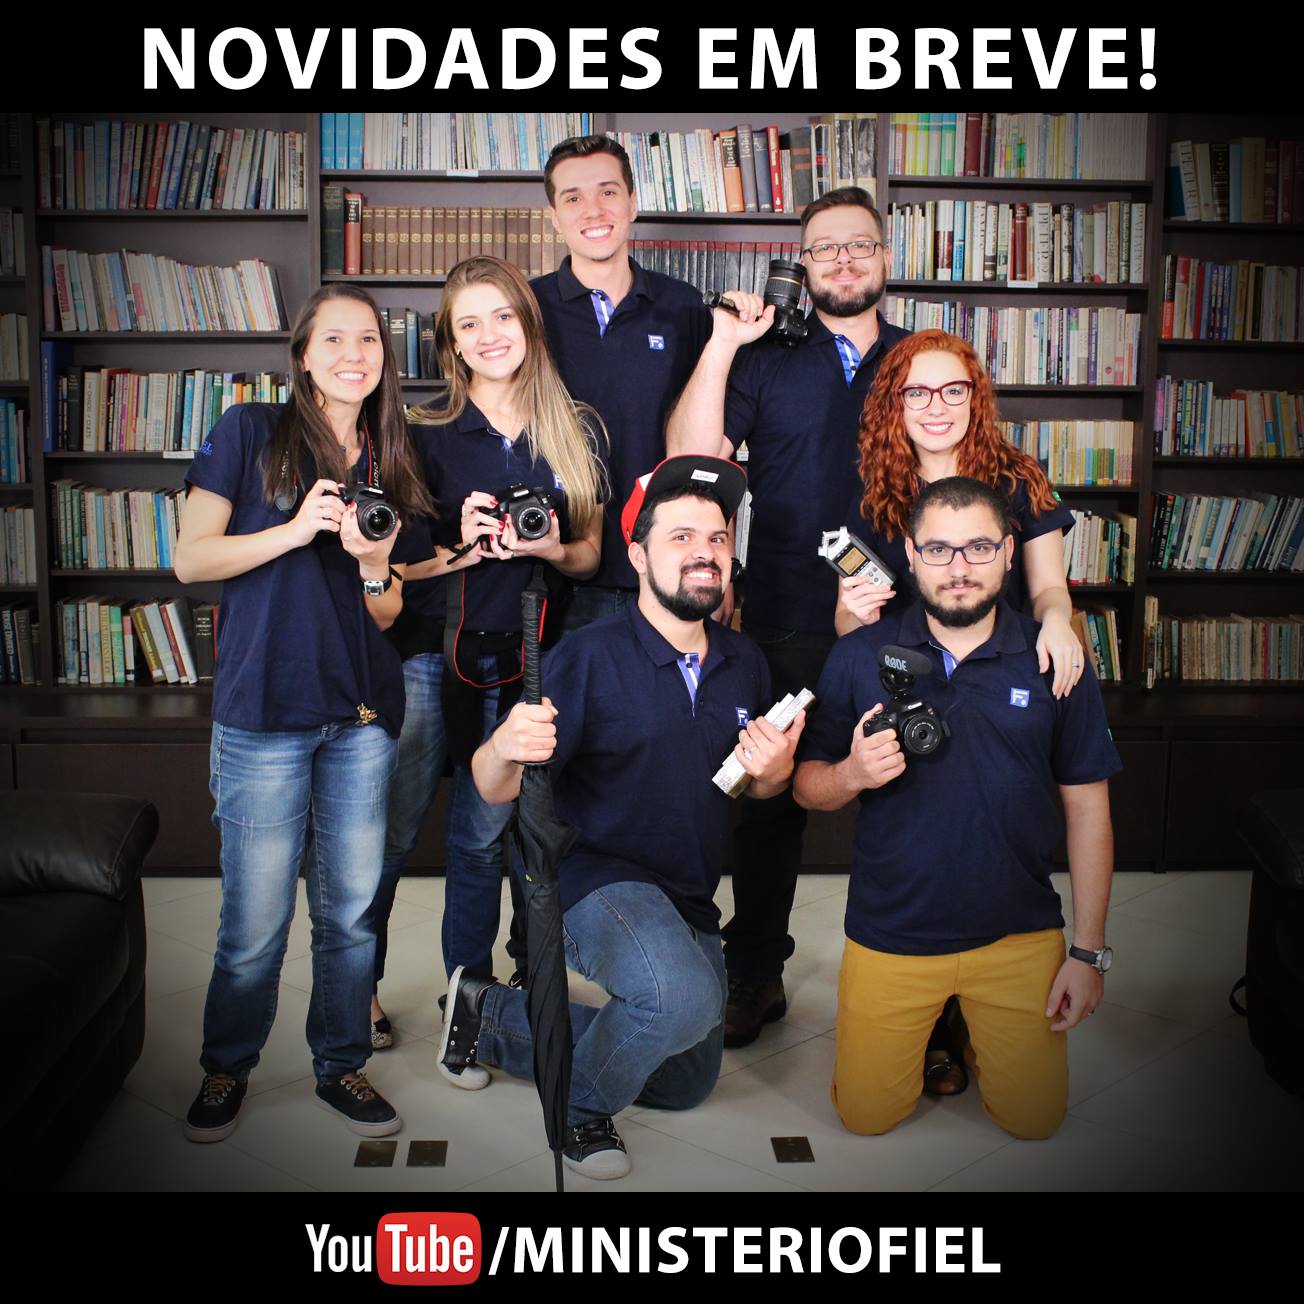 Ministério Fiel lança novos programas com YouTubers cristãos